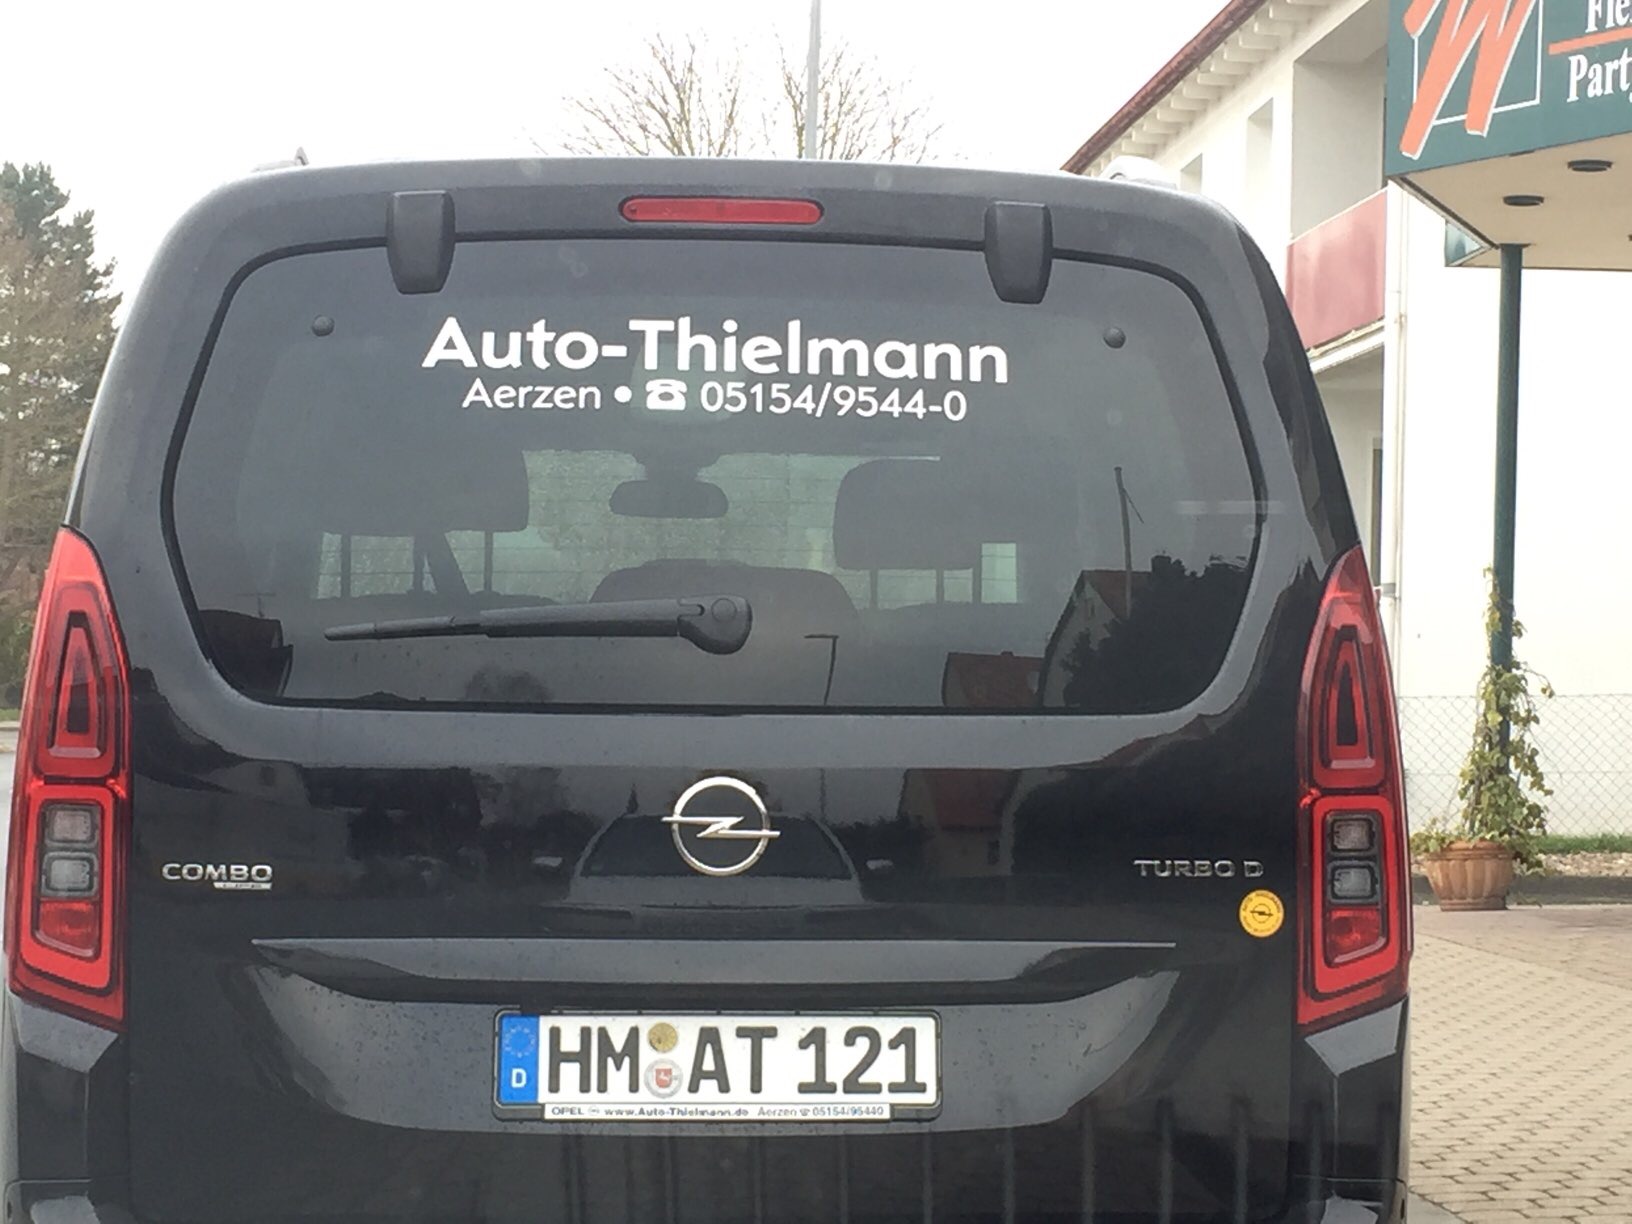 Bild 5 DPD Pickup Paketshop Auto-Thielmann GmbH in Aerzen